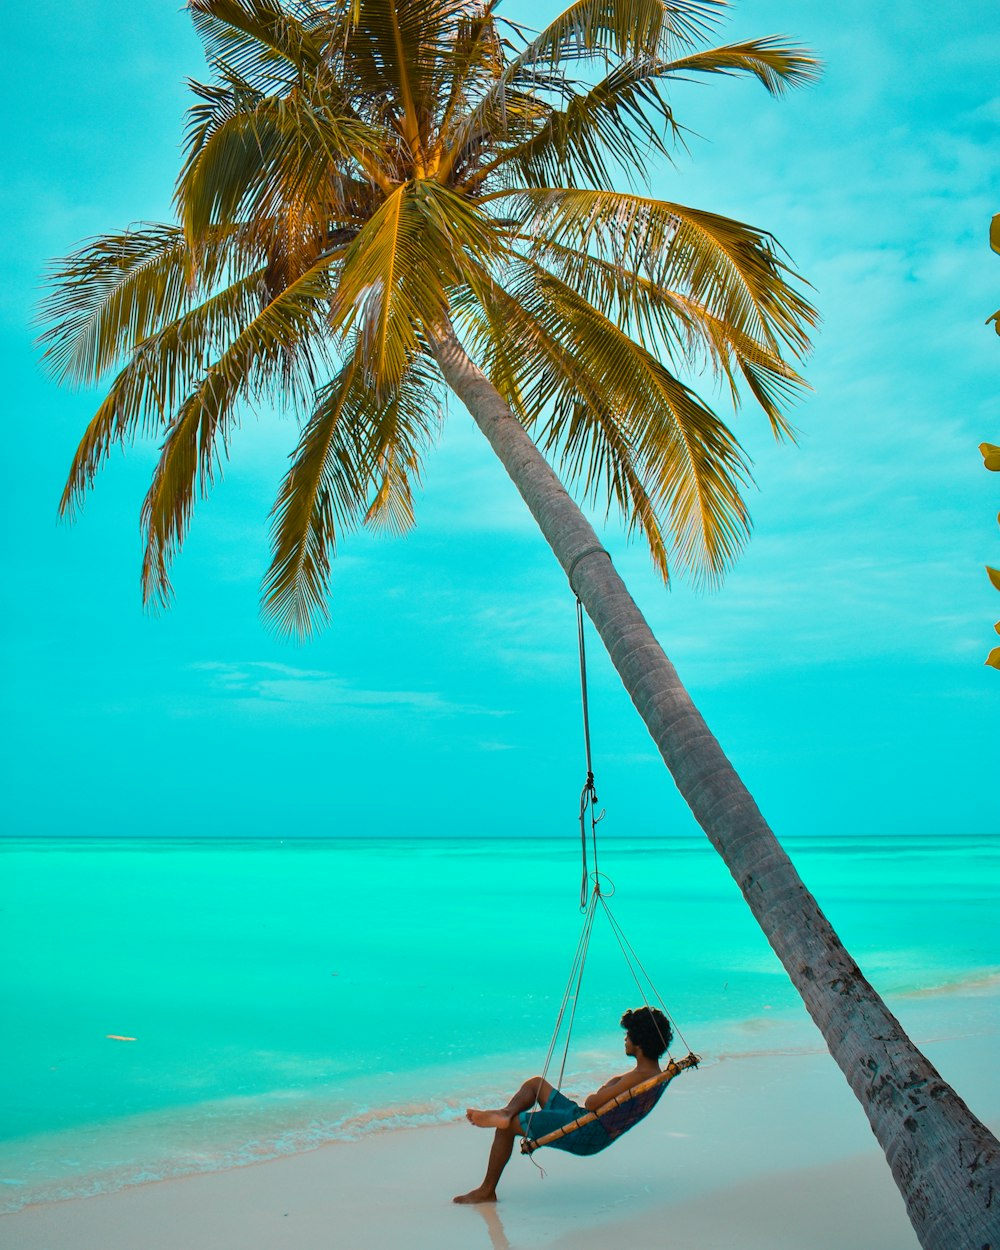 Uomo seduto sull'amaca vicino alla spiaggia durante il giorno foto – Maldive  Immagine gratuita su Unsplash